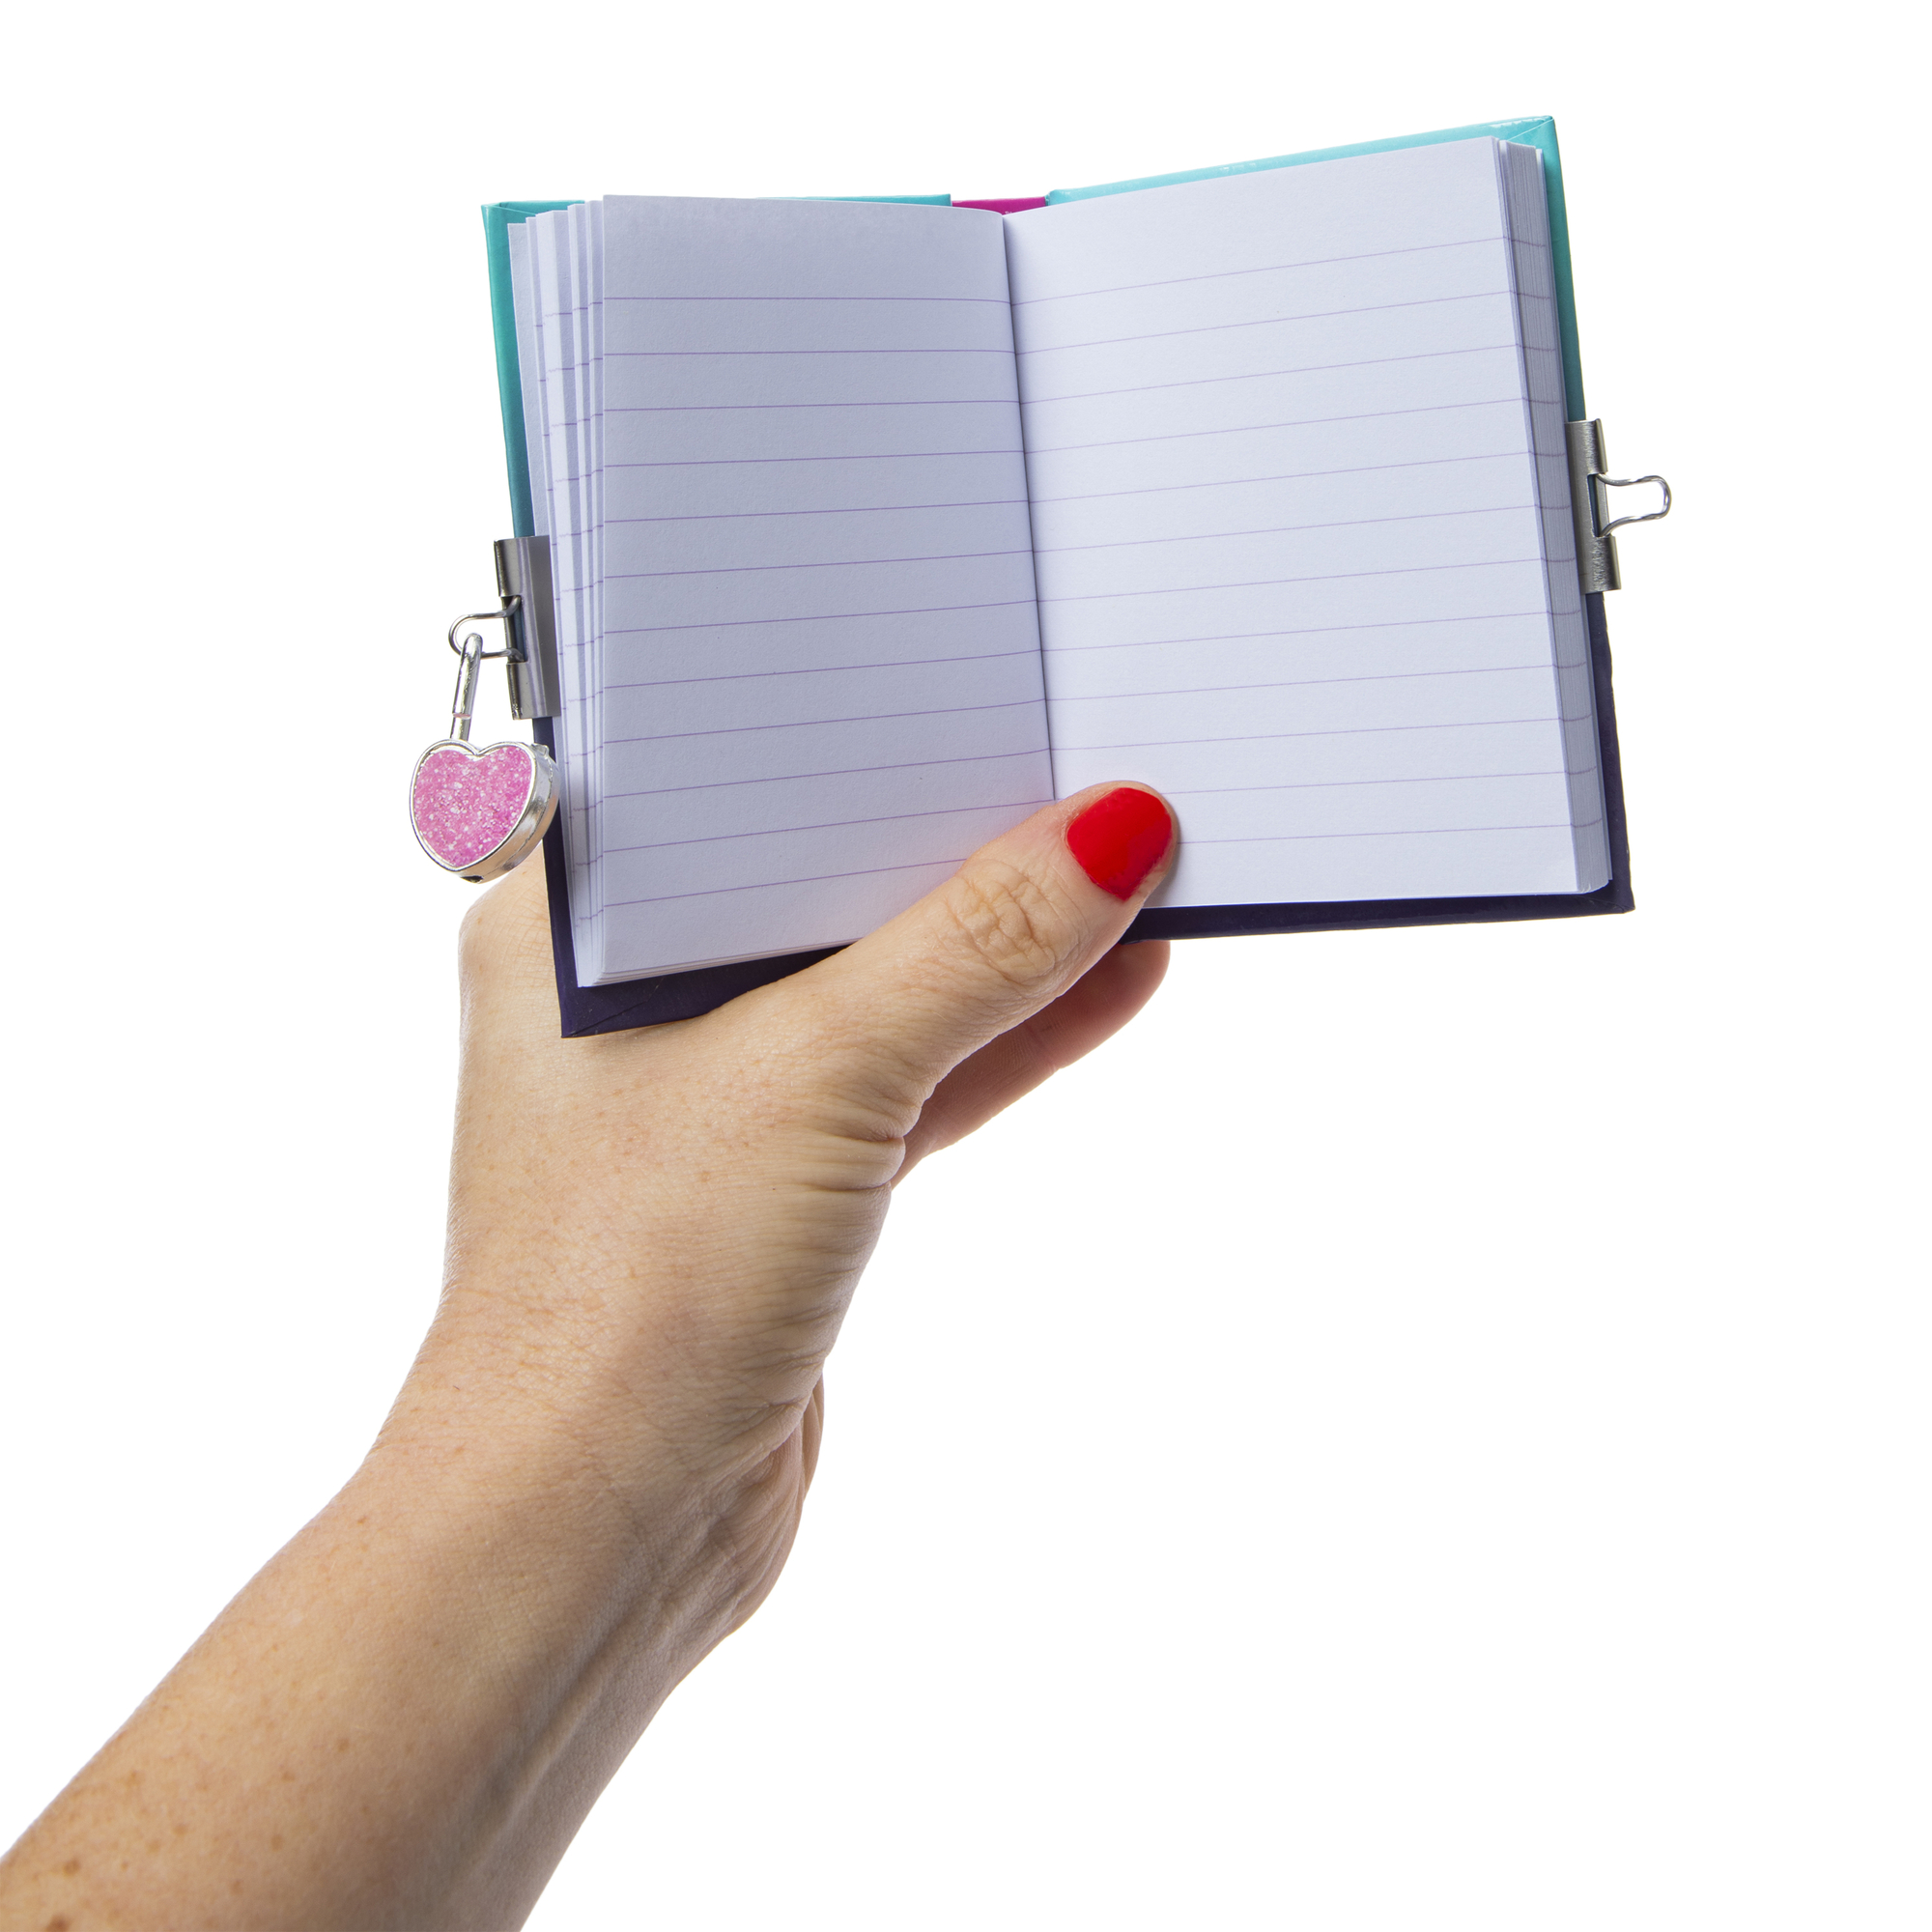 Encanto mini diary with pen